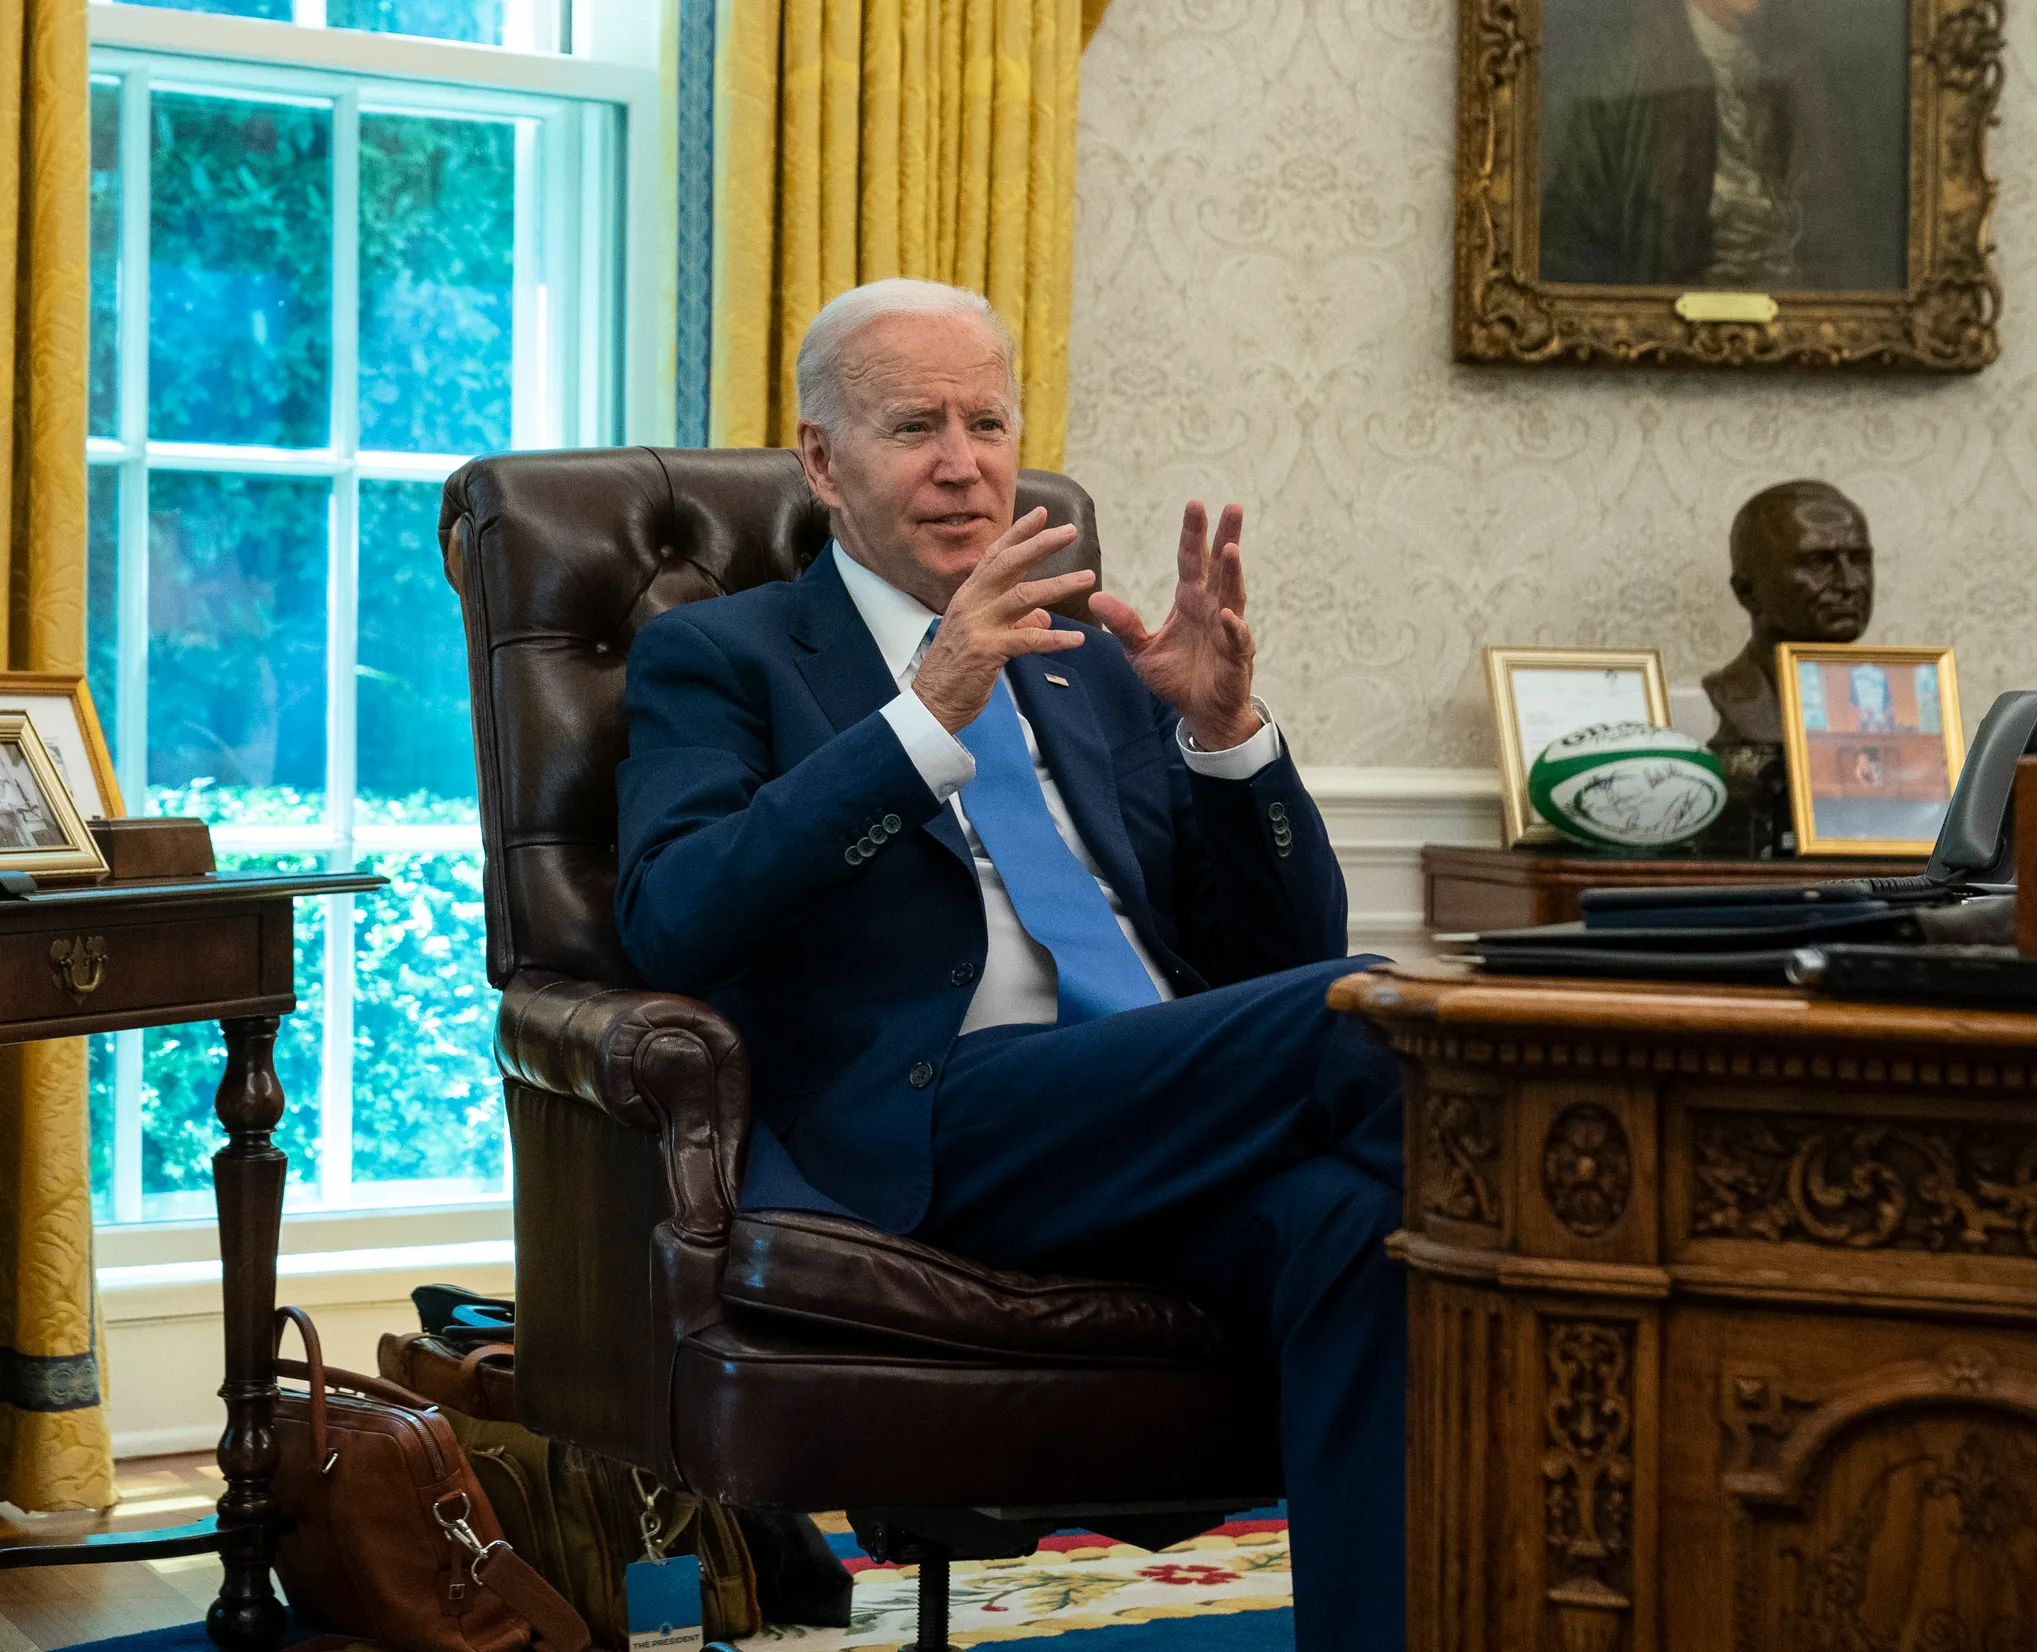 High Quality Joe Biden in the Oval Office Blank Meme Template